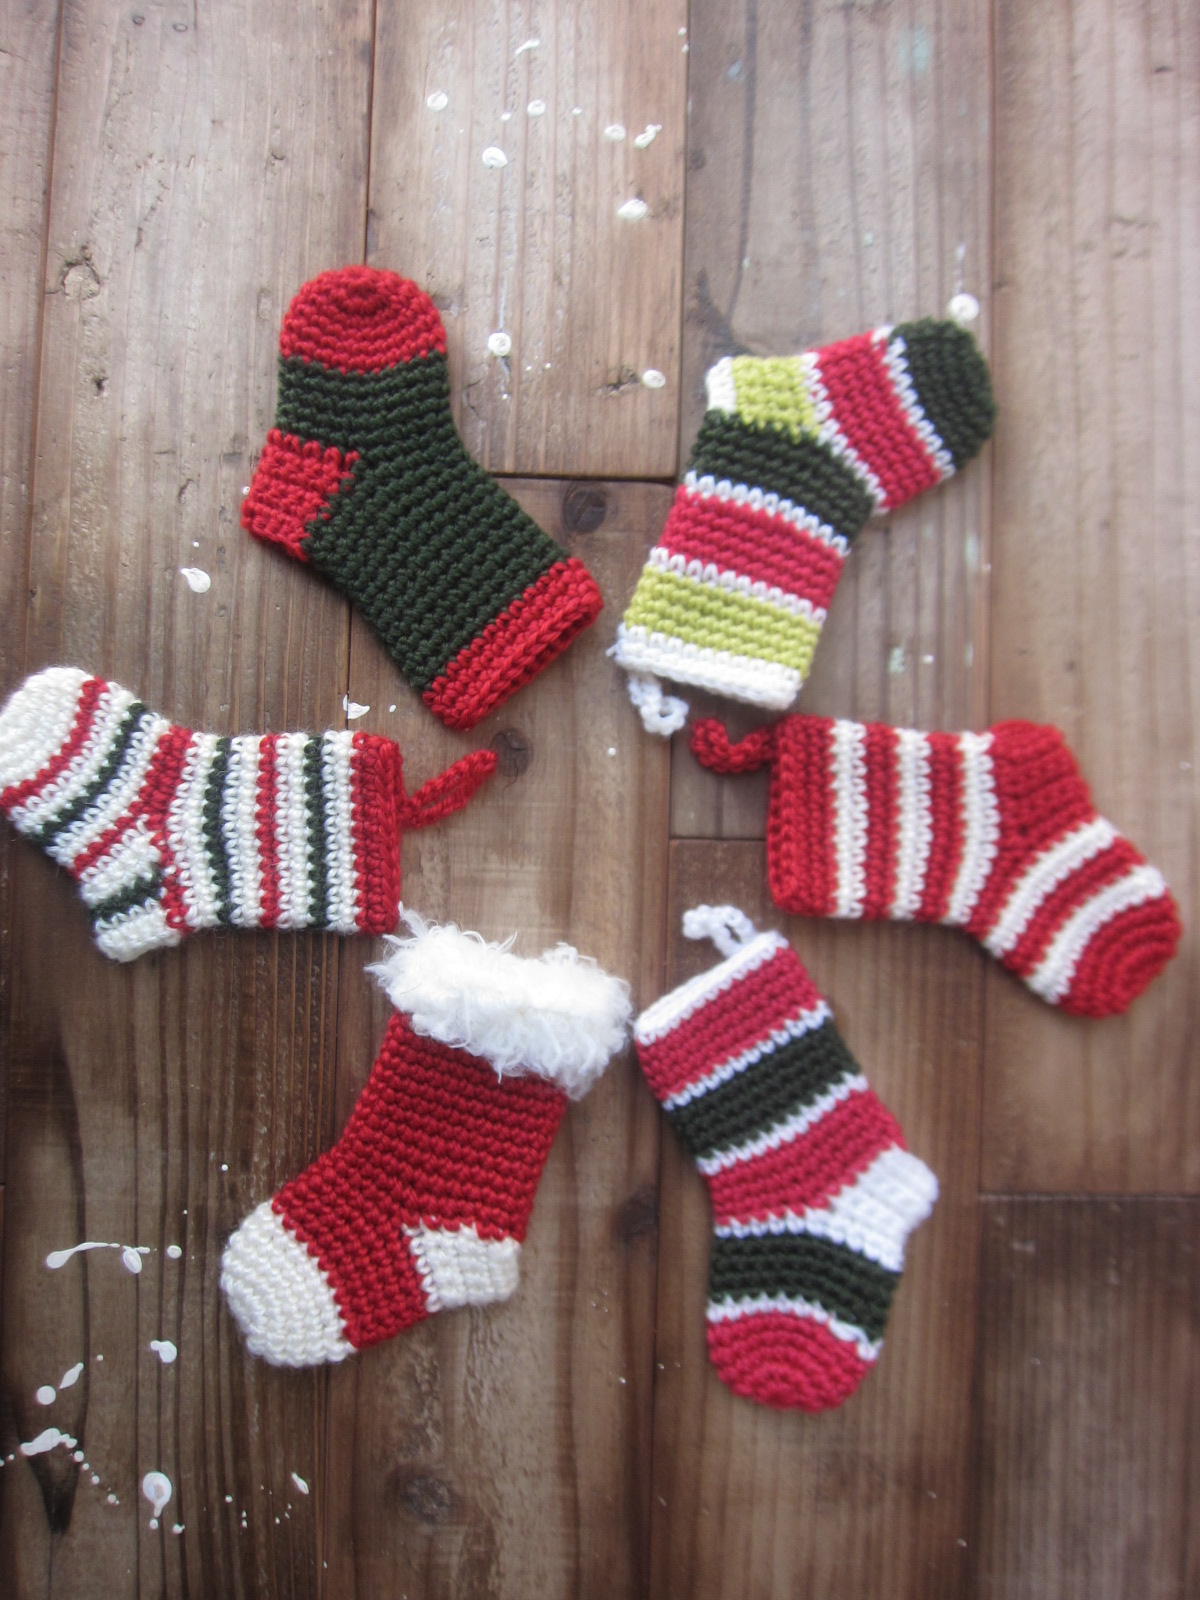 クリスマス・ミニソックス : 【編み物】クリスマスのキュートなおうち雑貨♡編み図レシピ集 - NAVER まとめ